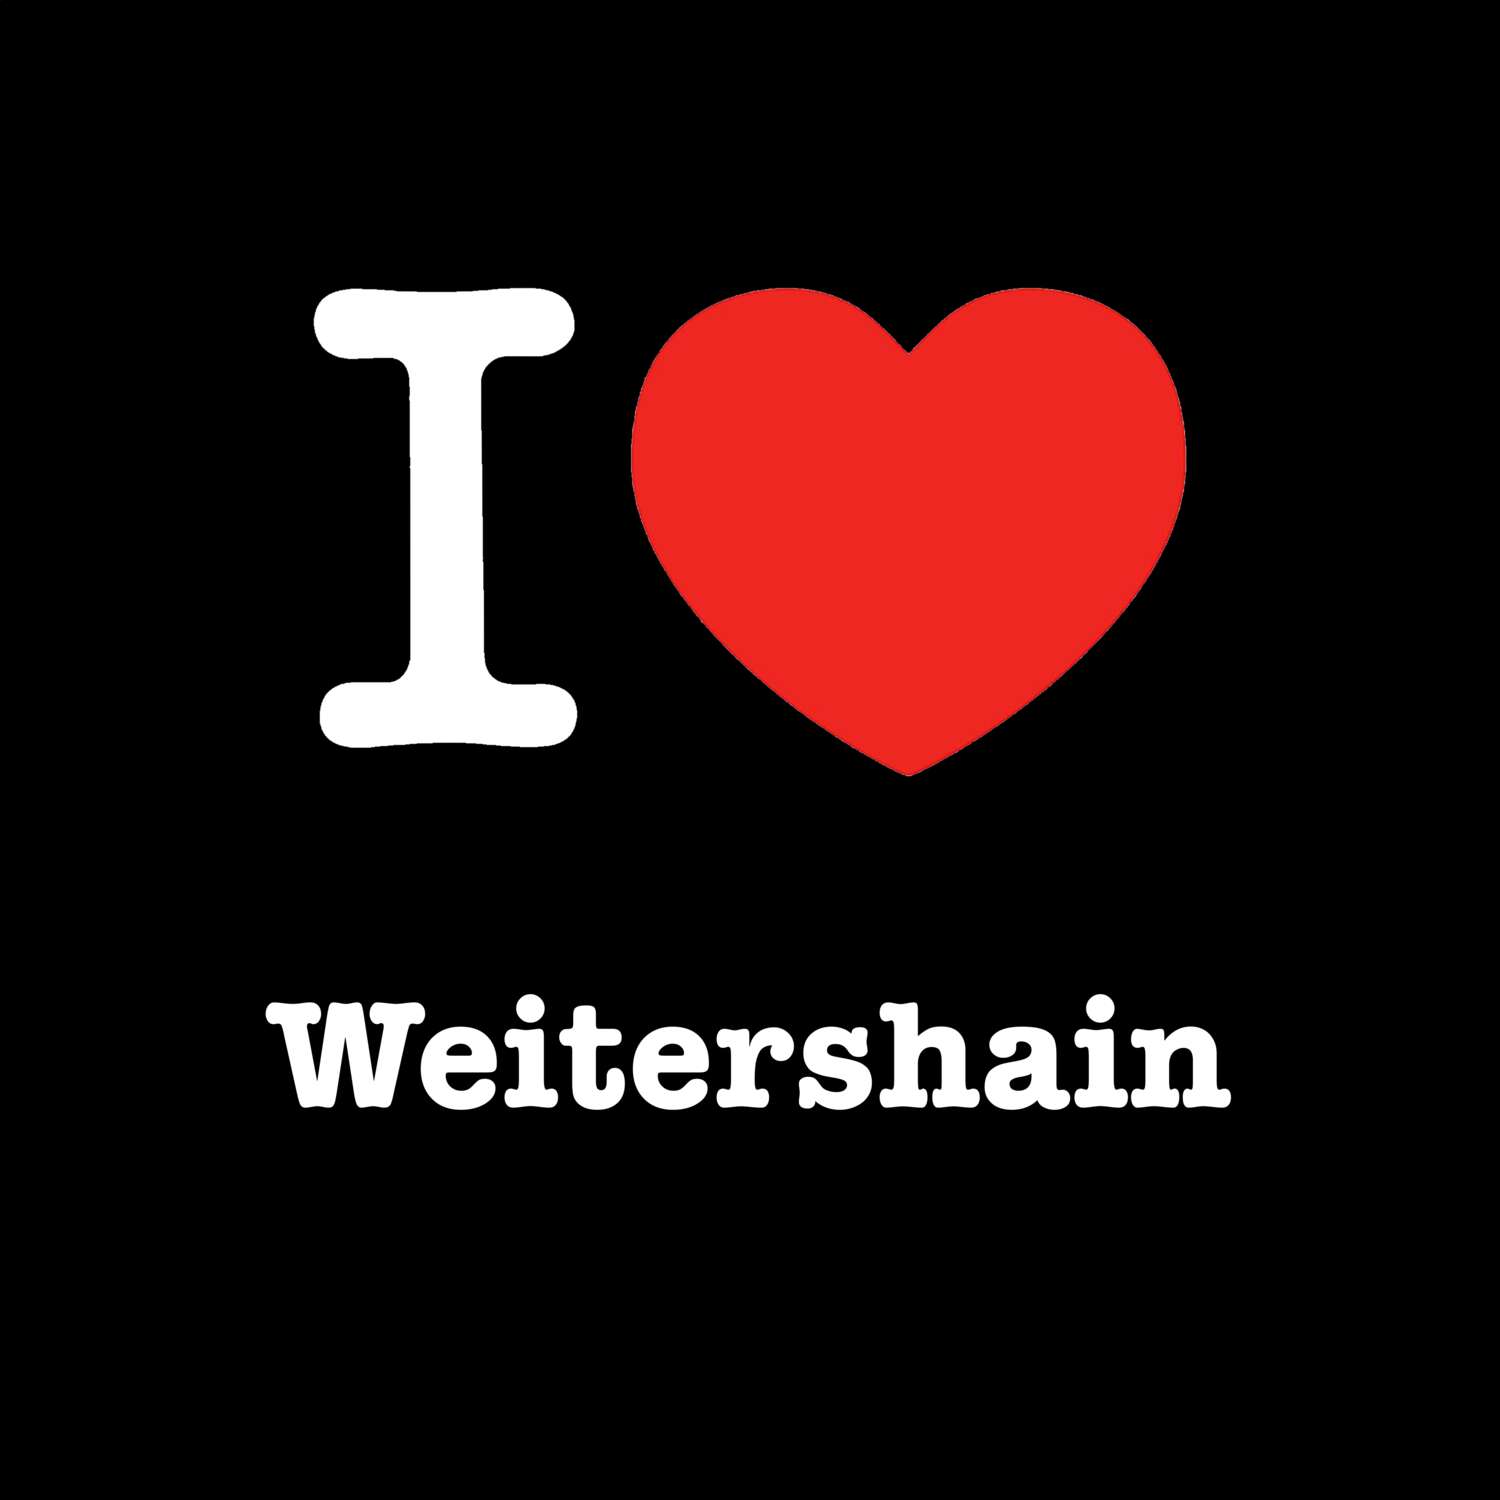 Weitershain T-Shirt »I love«